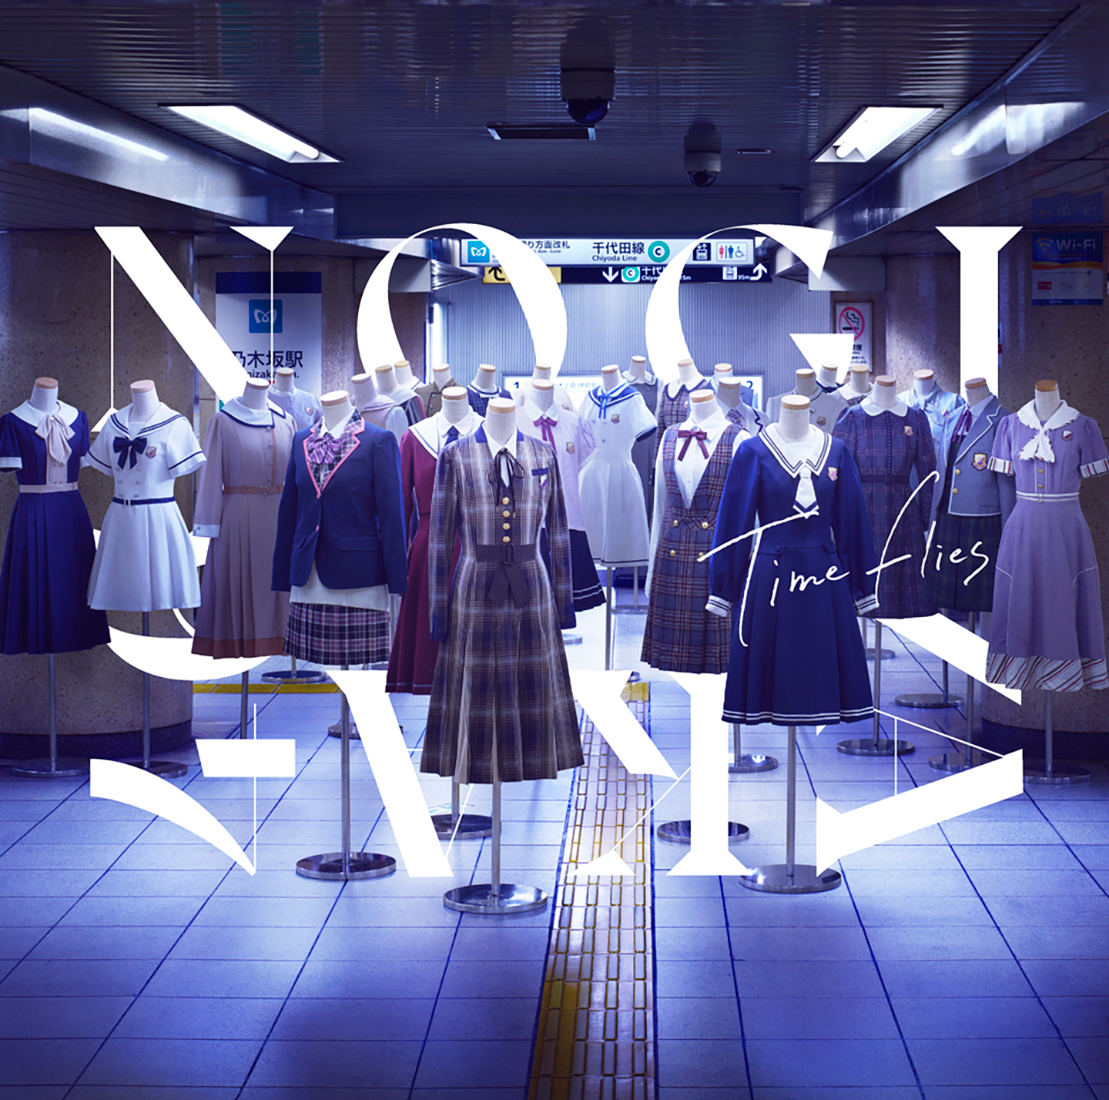 乃木坂46、ベストアルバム『Time flies』のジャケット公開！ モチーフは1stアルバム『透明な色』